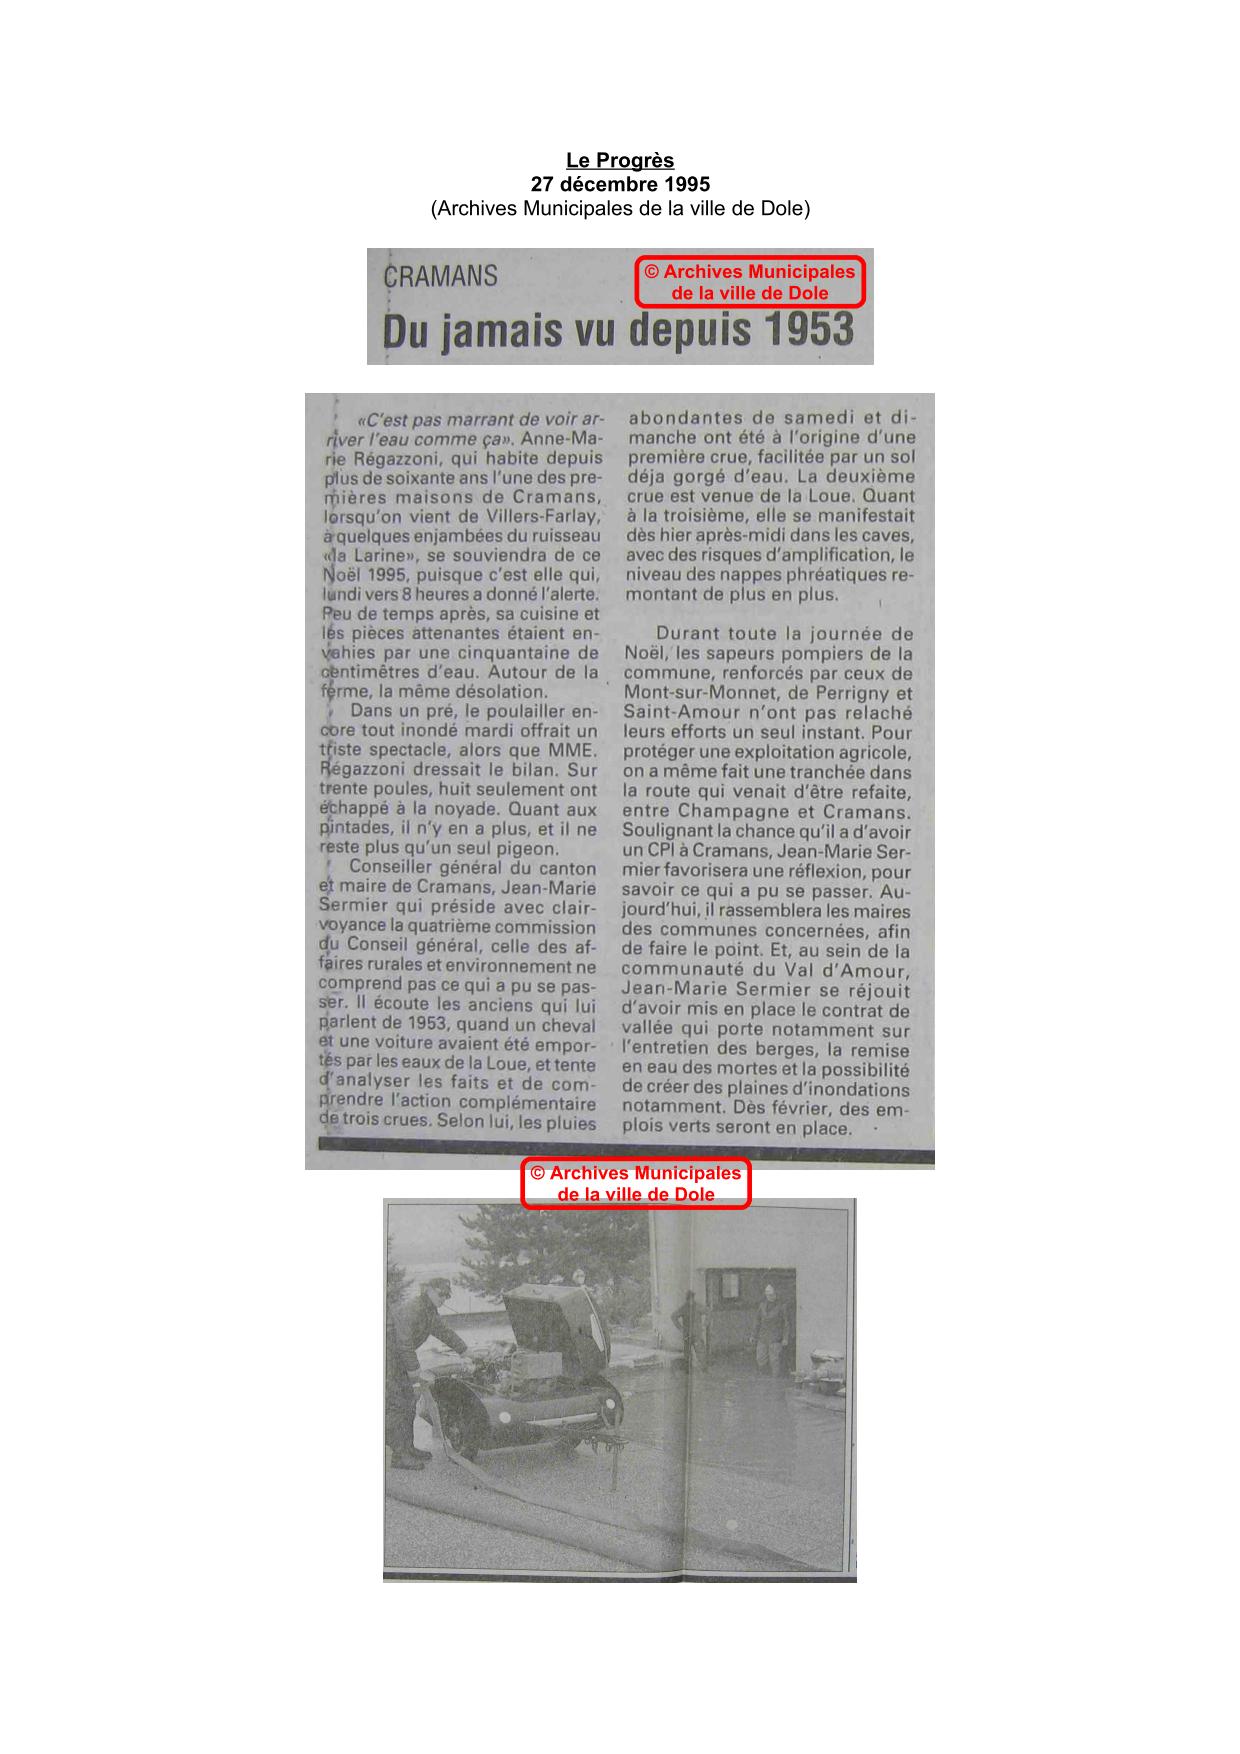 Journal - Le Progrès - 1996 – Cramans